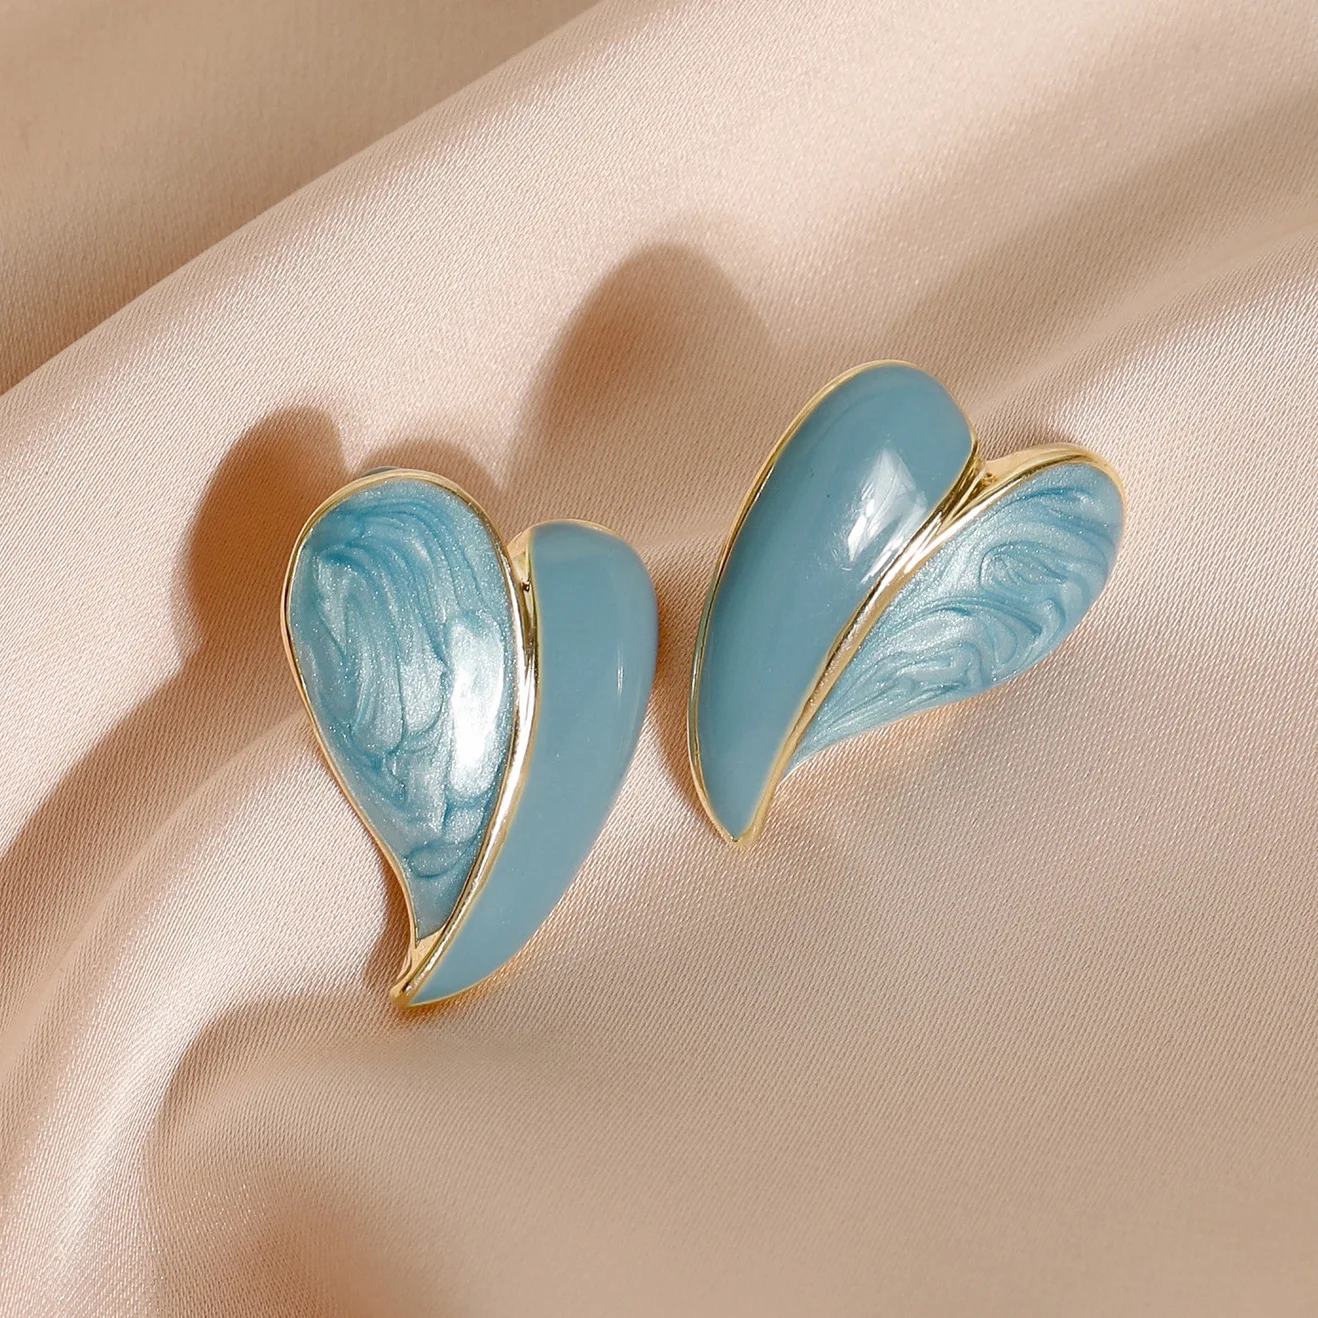 Романтические милые дизайнерские серьги-подвески Morandi цвета масляного синего сердца для женщин эффектные корейские модные ювелирные издел...